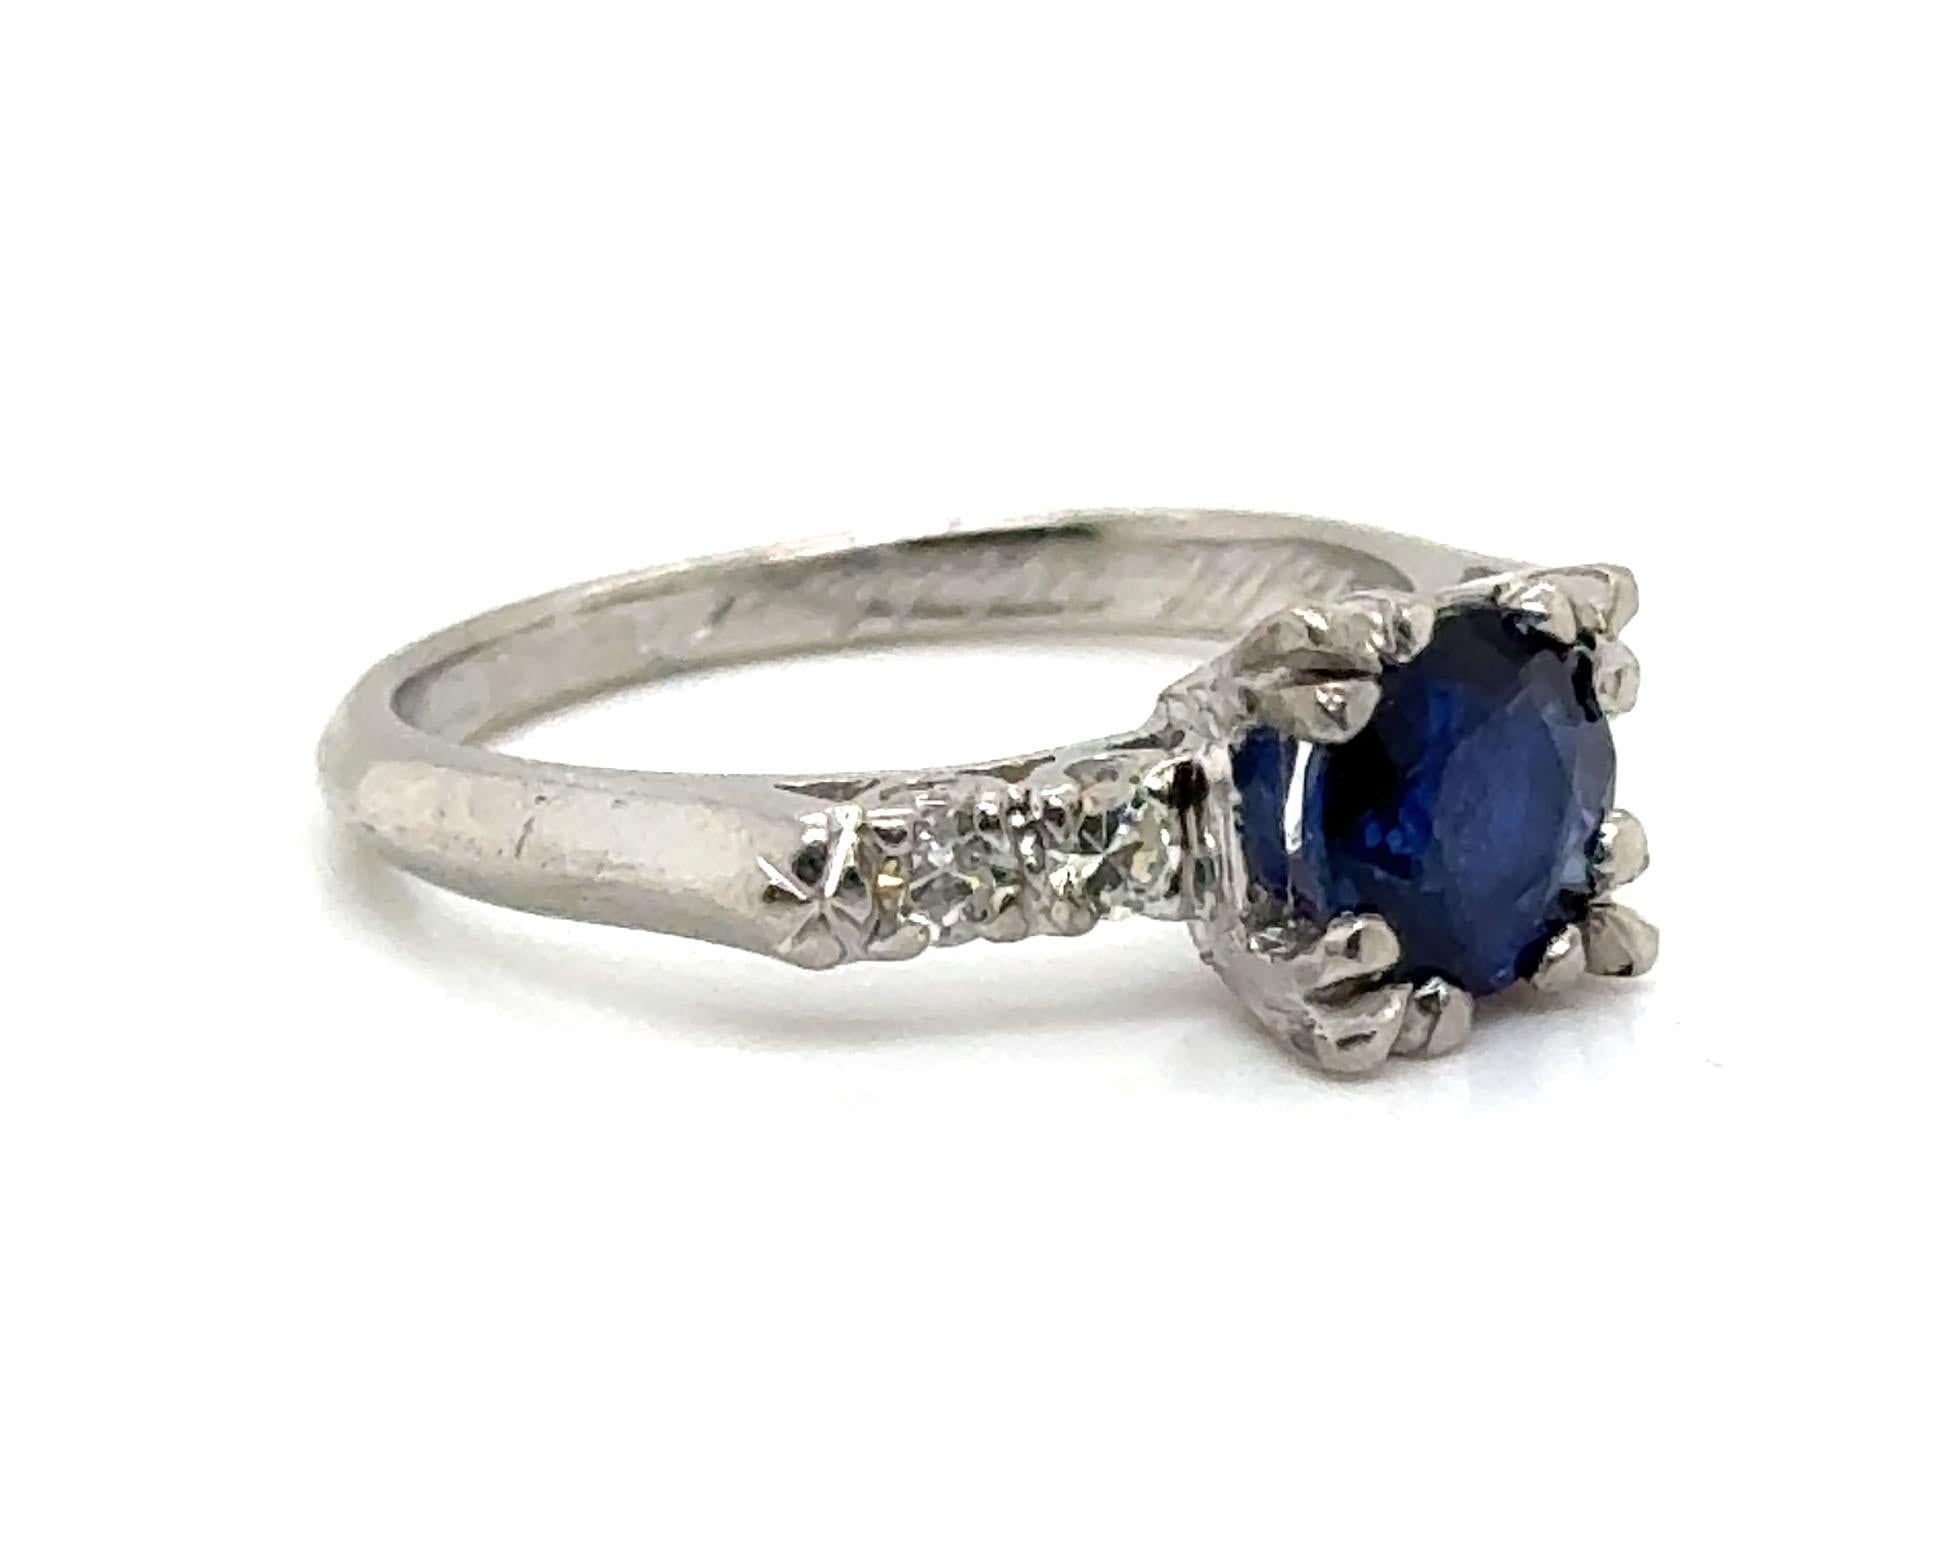 Echtes Original Art Deco Antik datiert 3-14-1940 Vintage Saphir Diamant Ring 1,21ct Round Platinum


Mit einem fesselnden Mittelstück präsentiert sich dieses Stück mit einem echten runden blauen Saphir mit einem Gewicht von 1,05 Karat.

Ergänzt wird